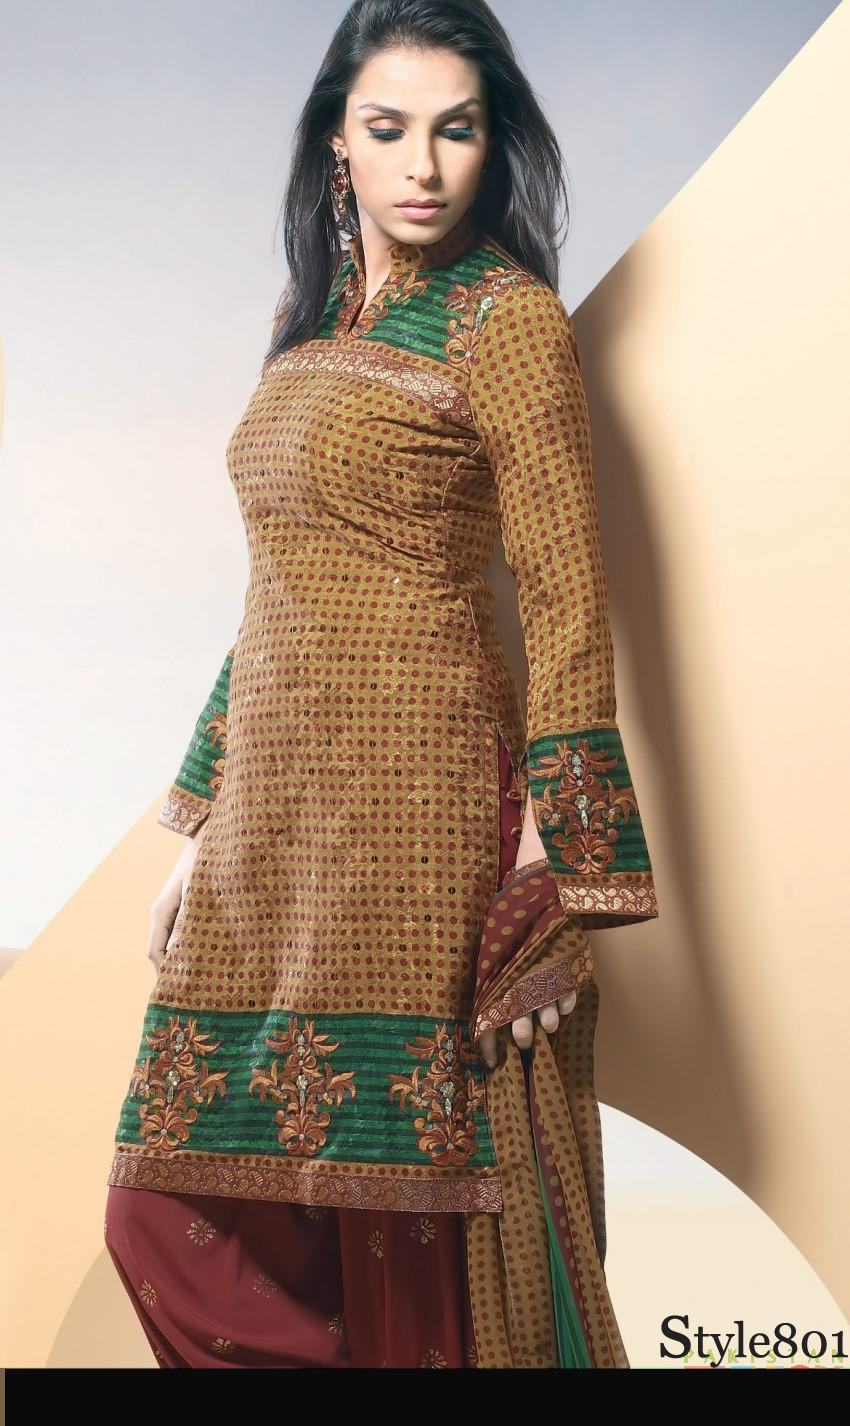 Wallpaper Or Fashion: Ladies Salwar Kameez